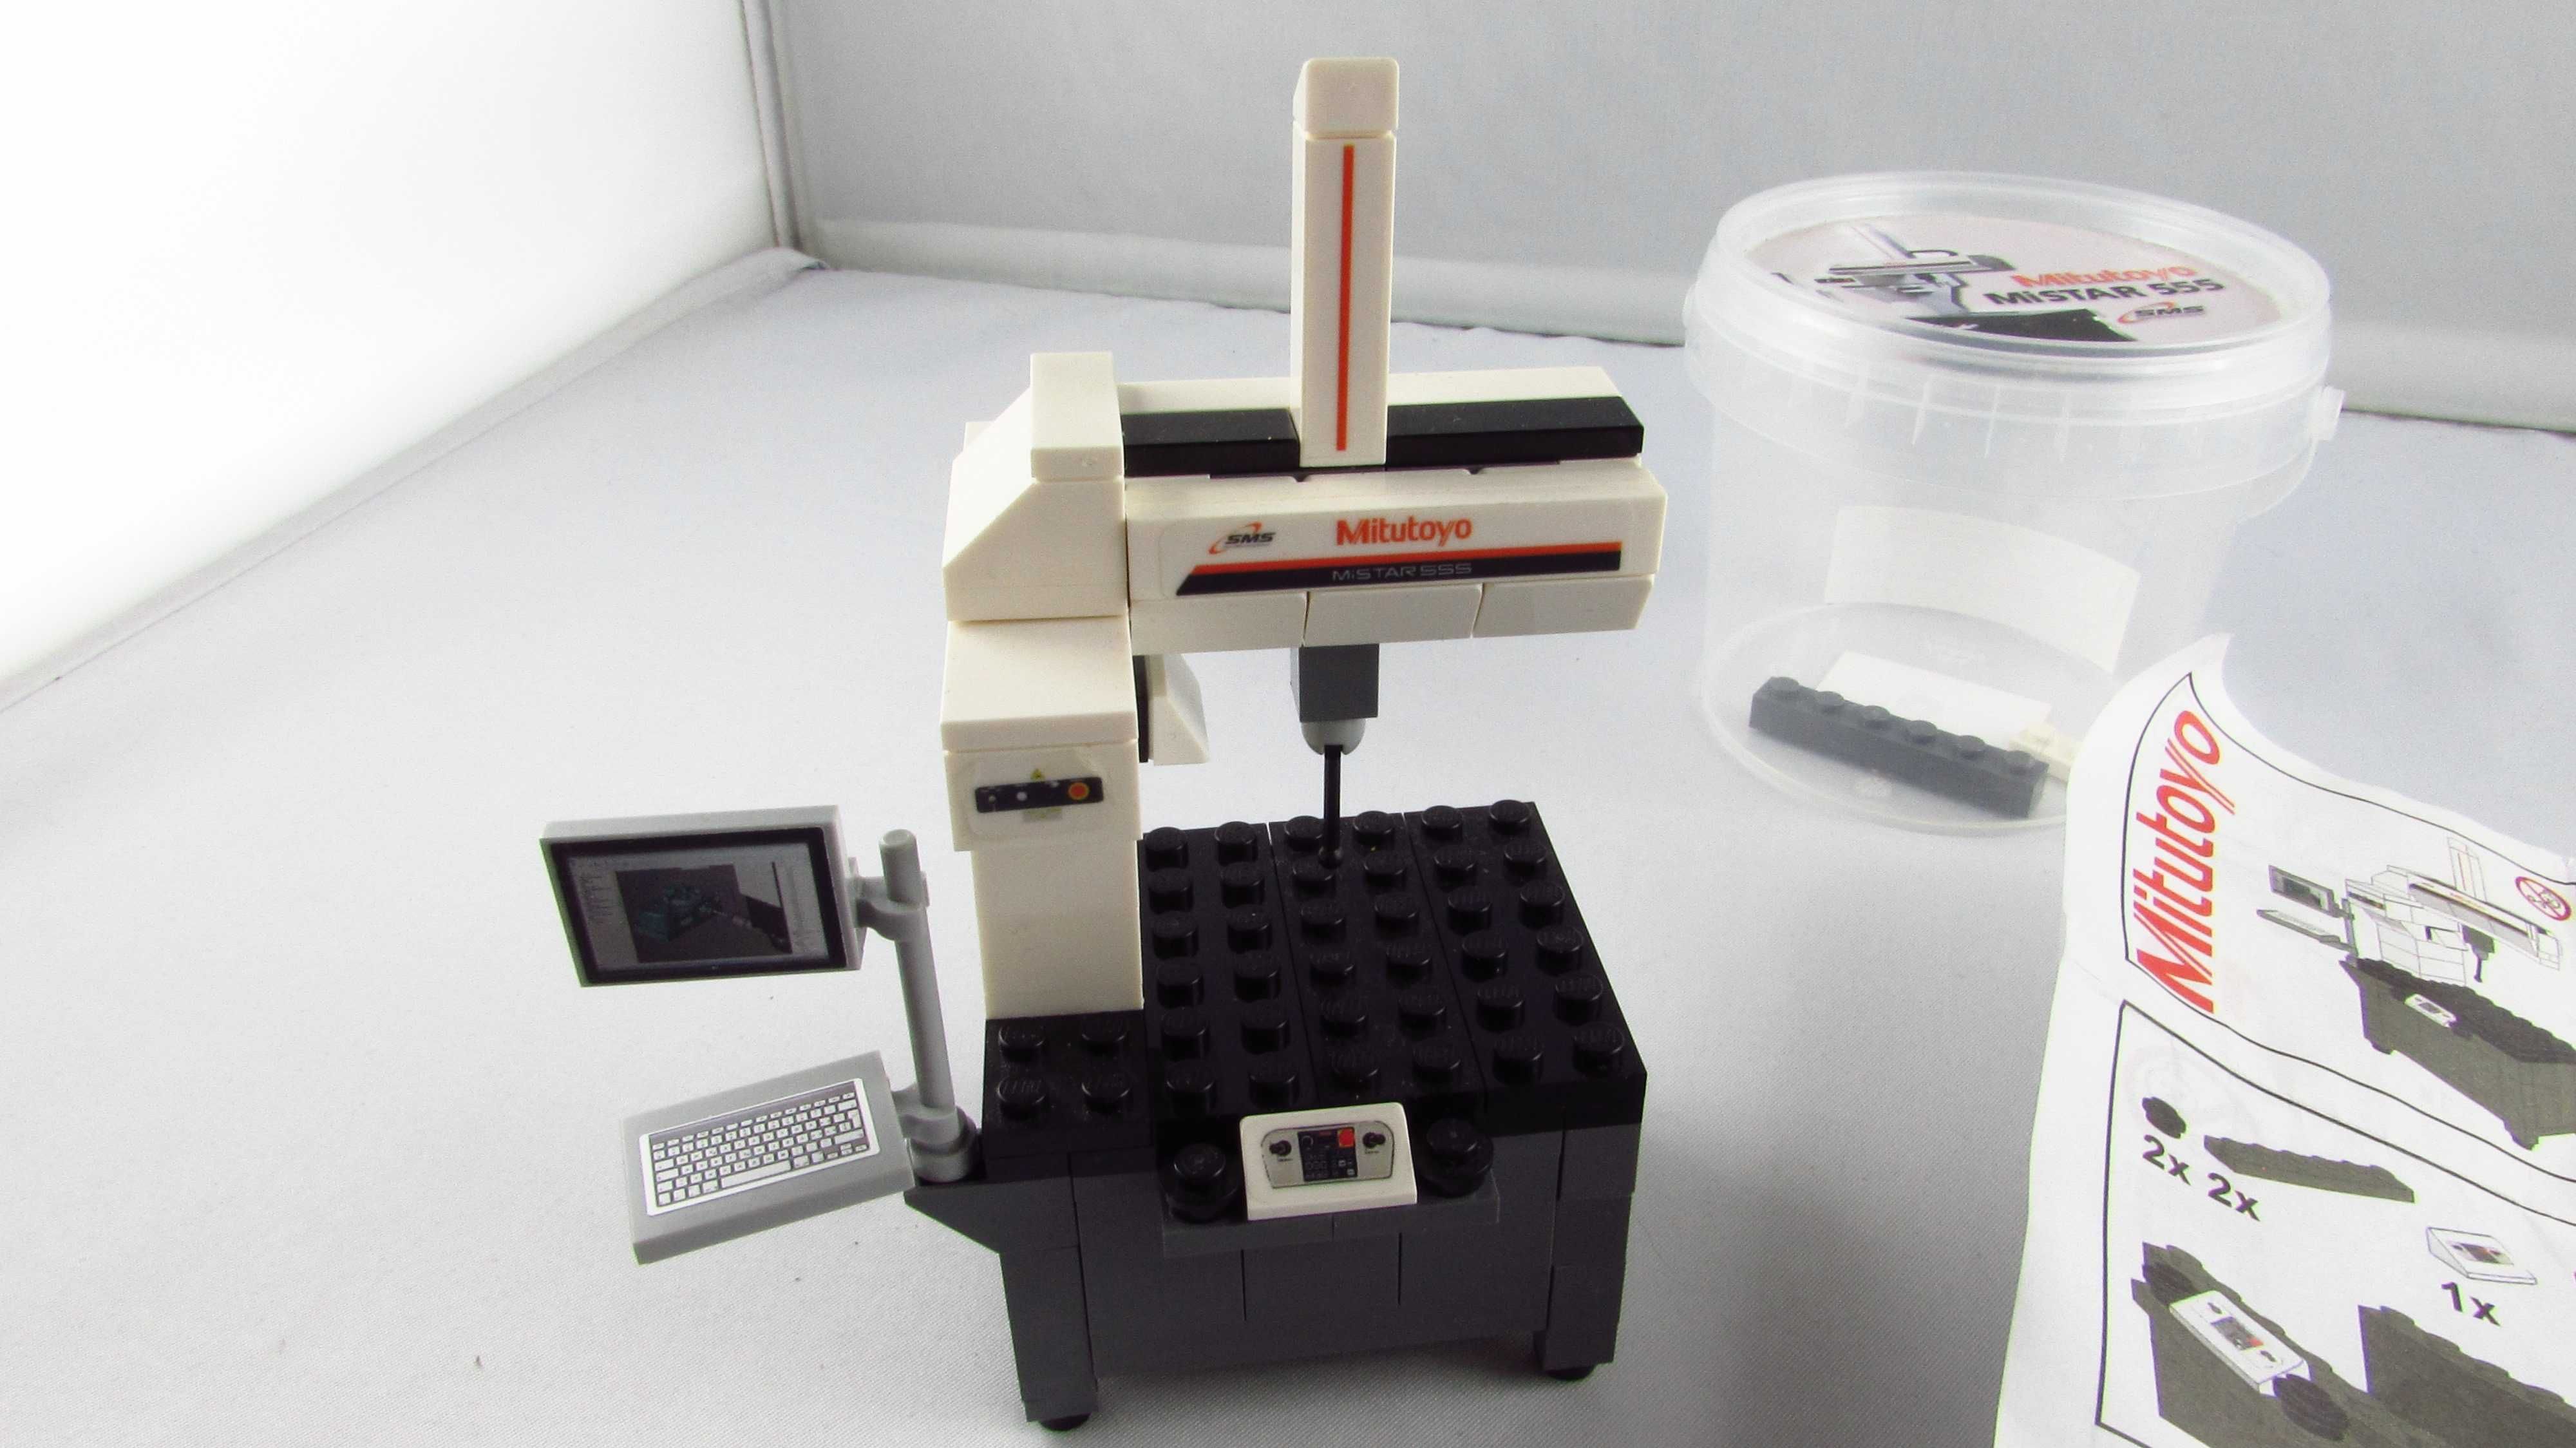 LEGO - SMS Mitutoyo MiStar 555 - Zestaw firmowy